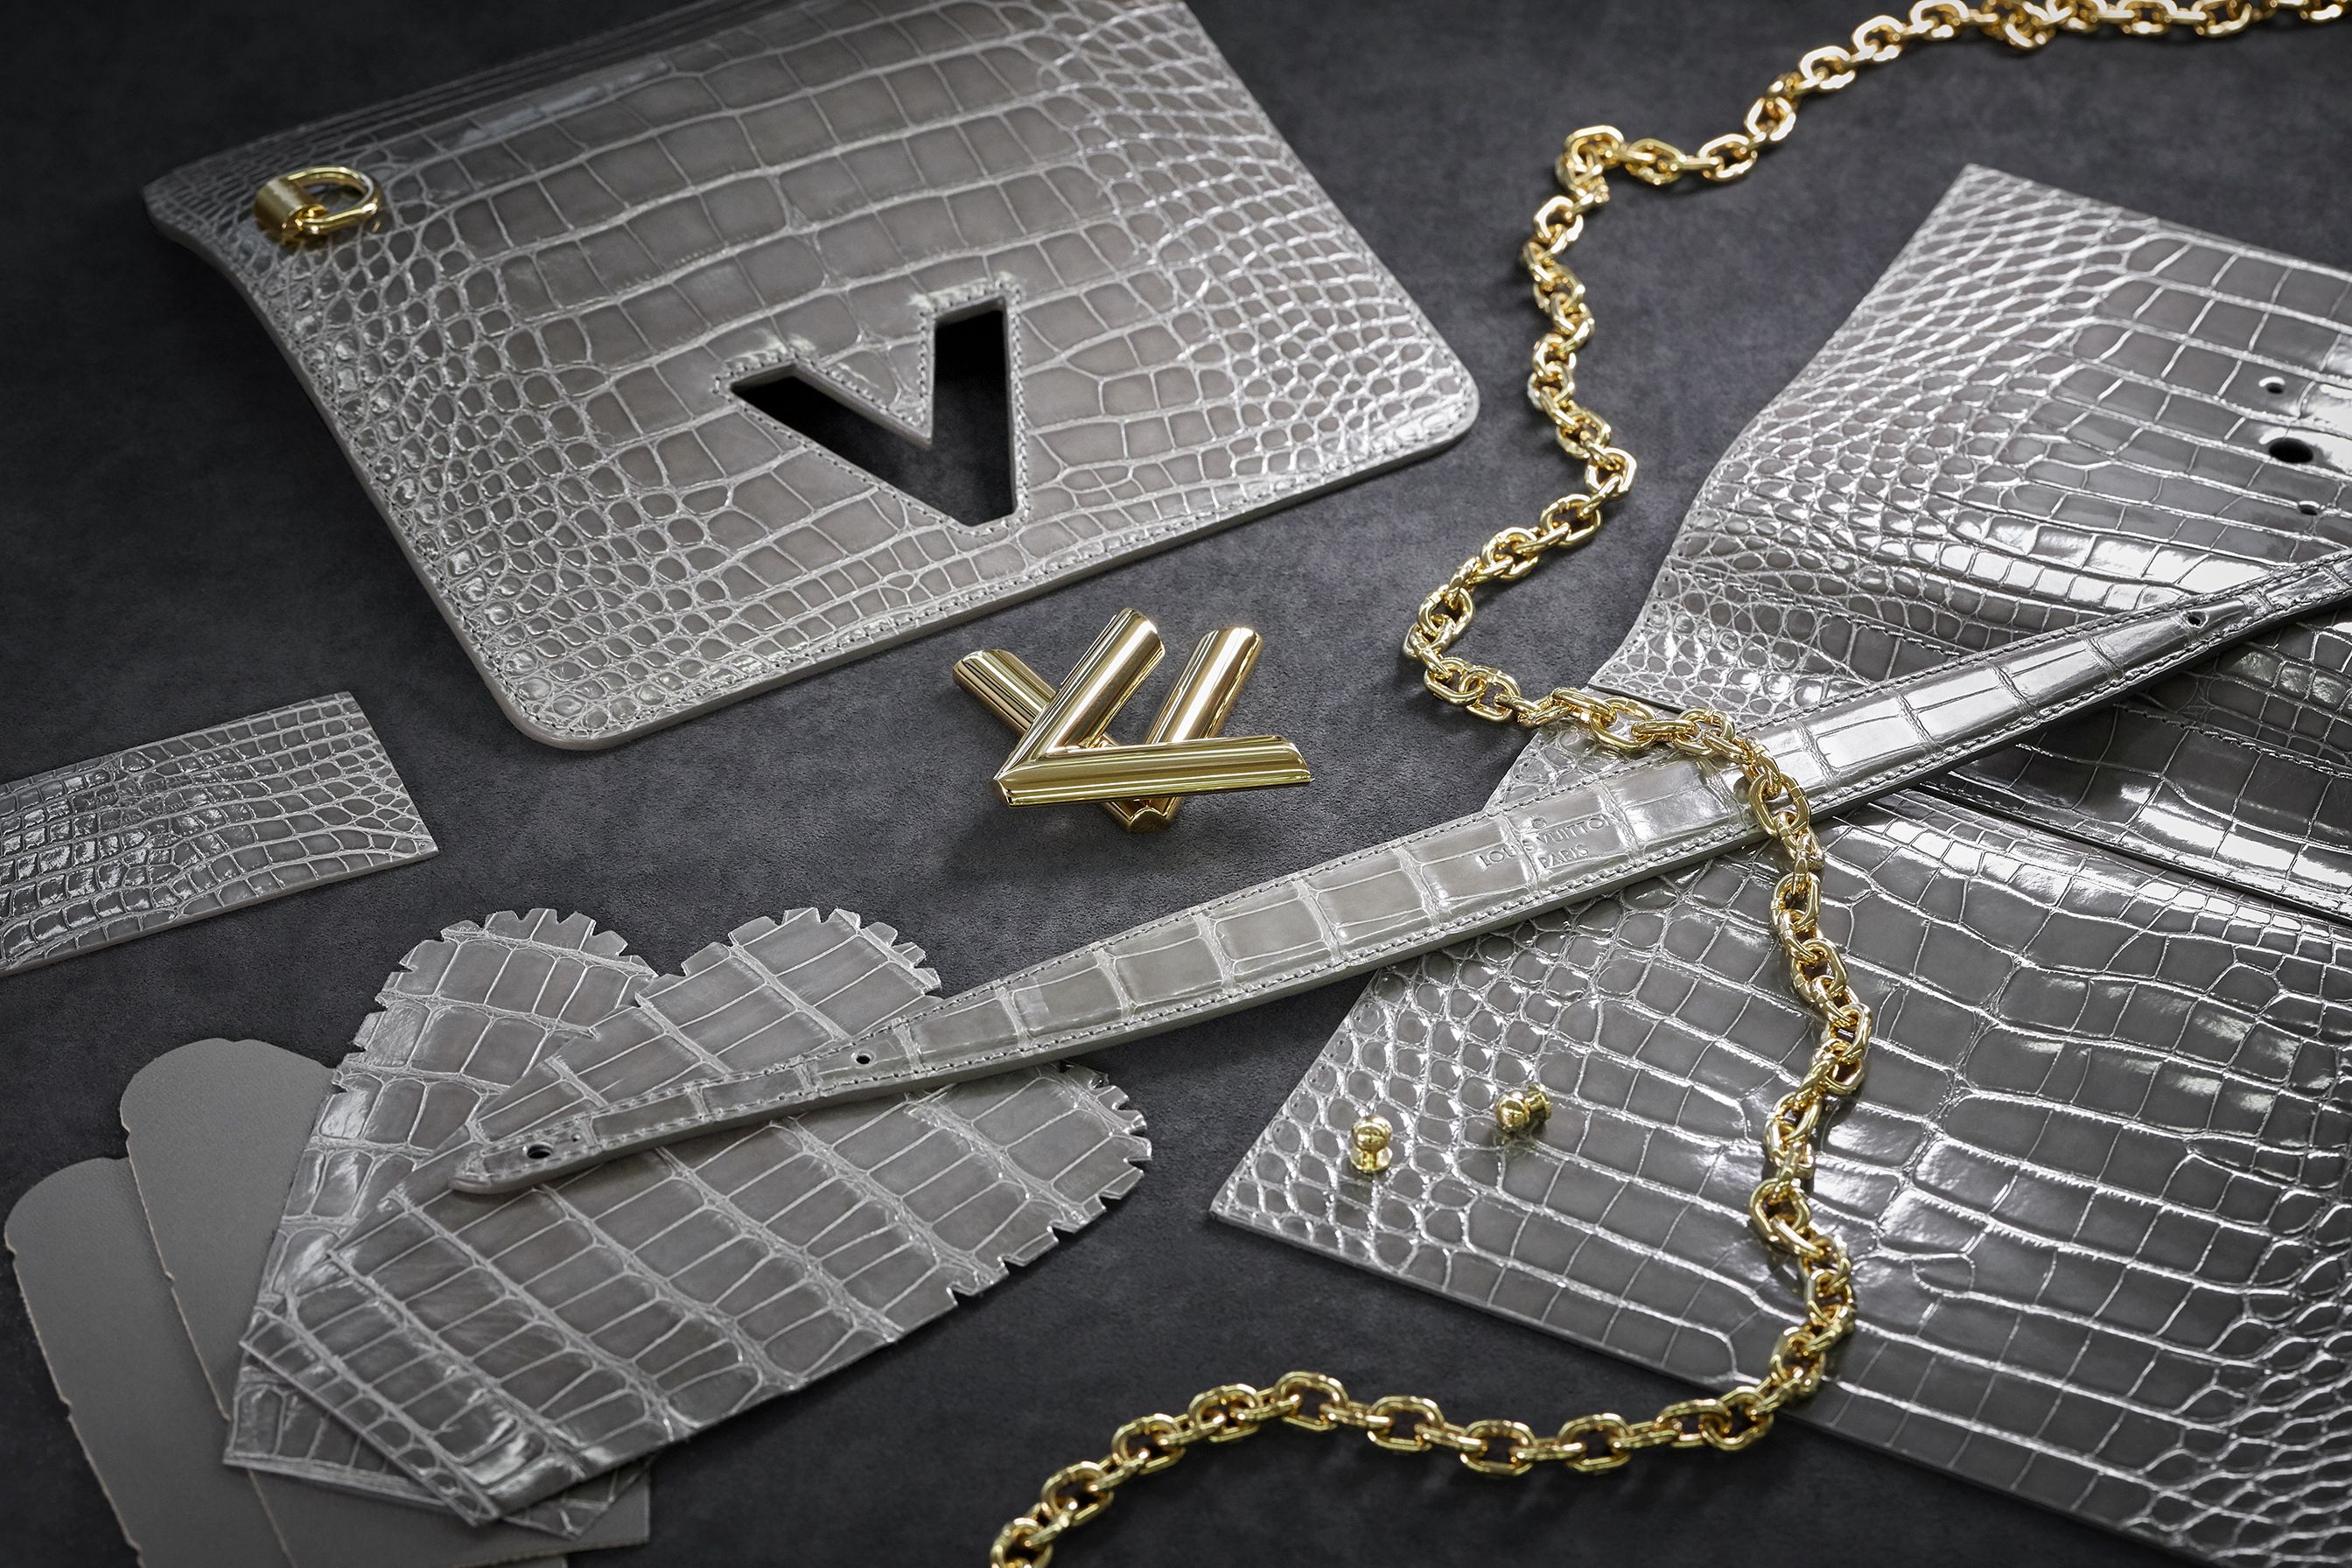 Bolsos para mujer de Louis Vuitton - Cómo llevar un bolso de lujo